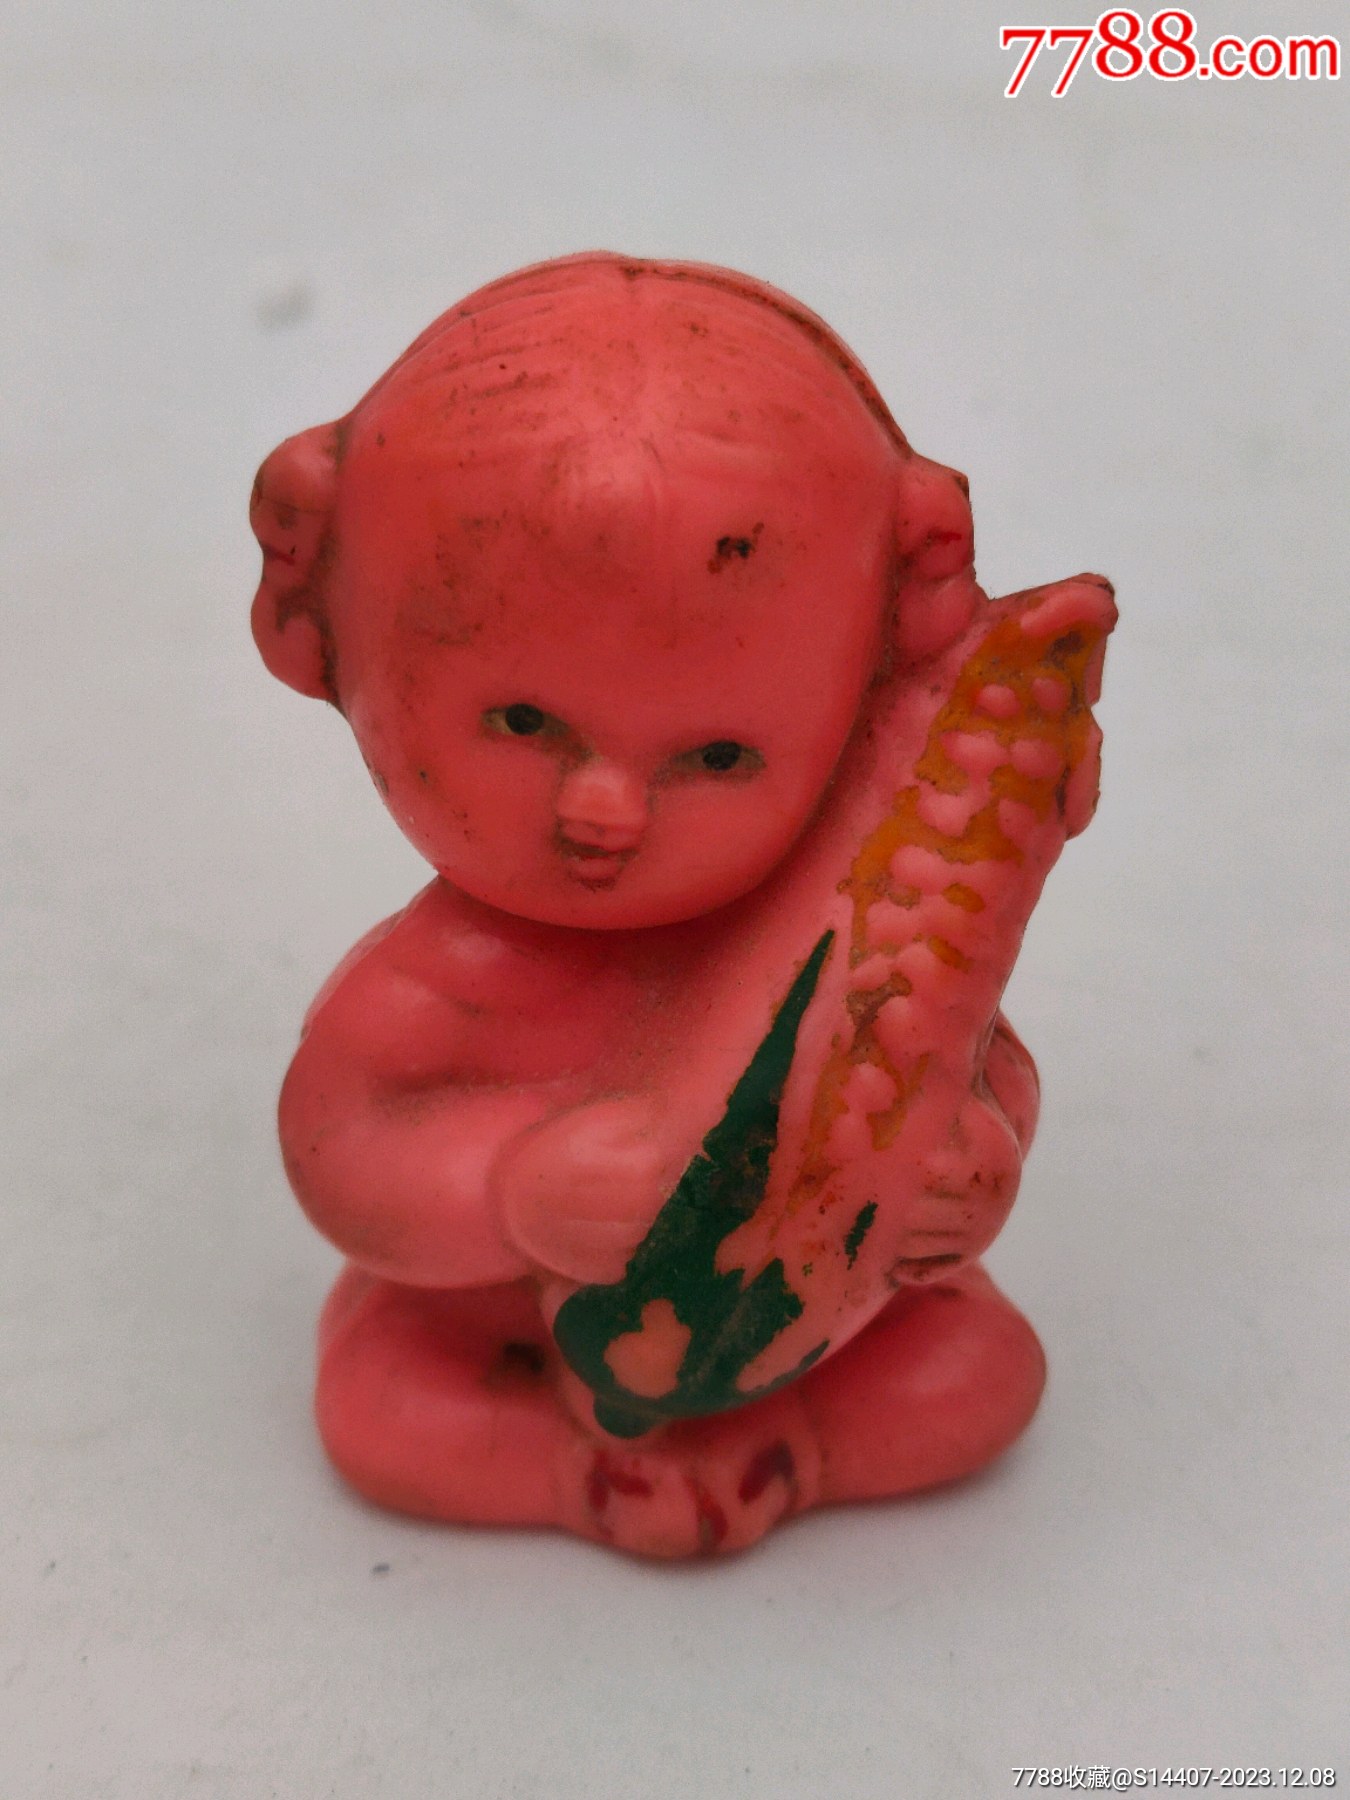 6070年代儿童玩具硬塑料娃娃-价格:30元-se93074151-其他传统玩具-零售-7788收藏__收藏热线